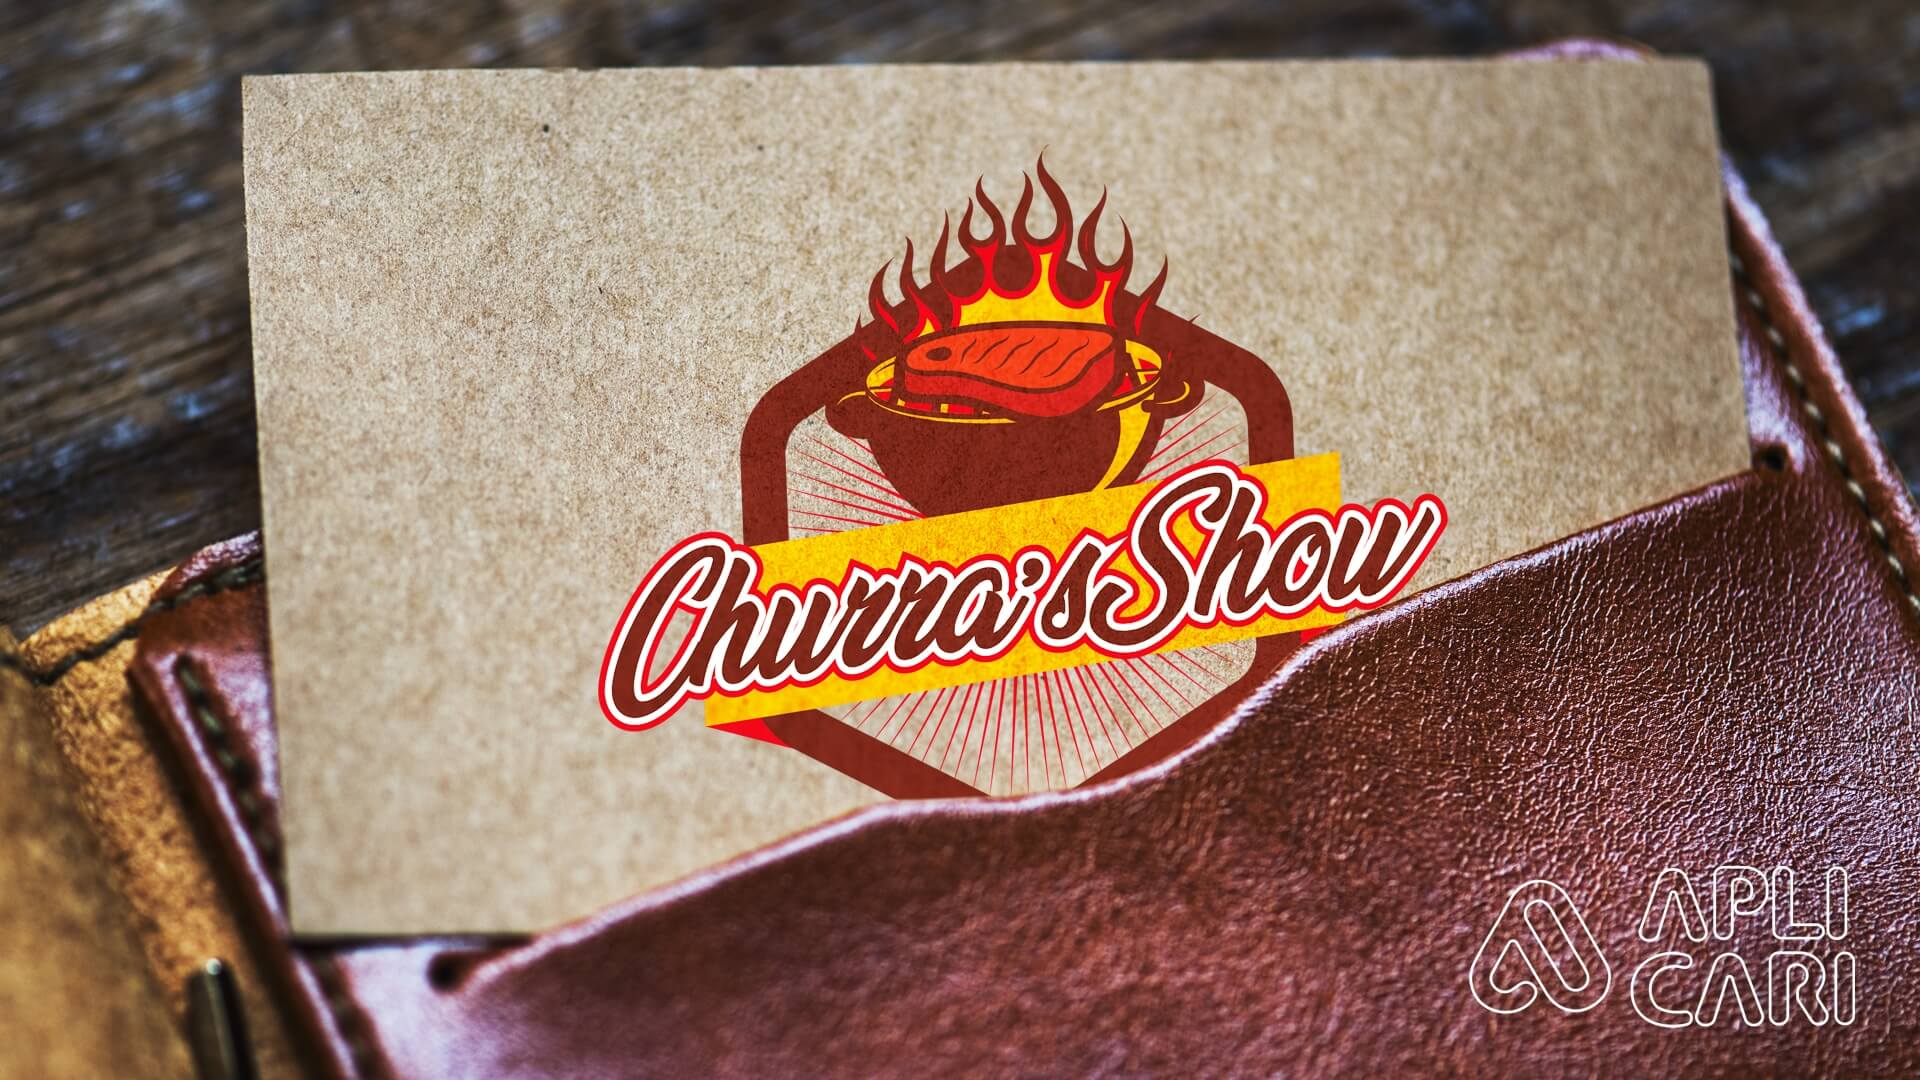 Churras Show